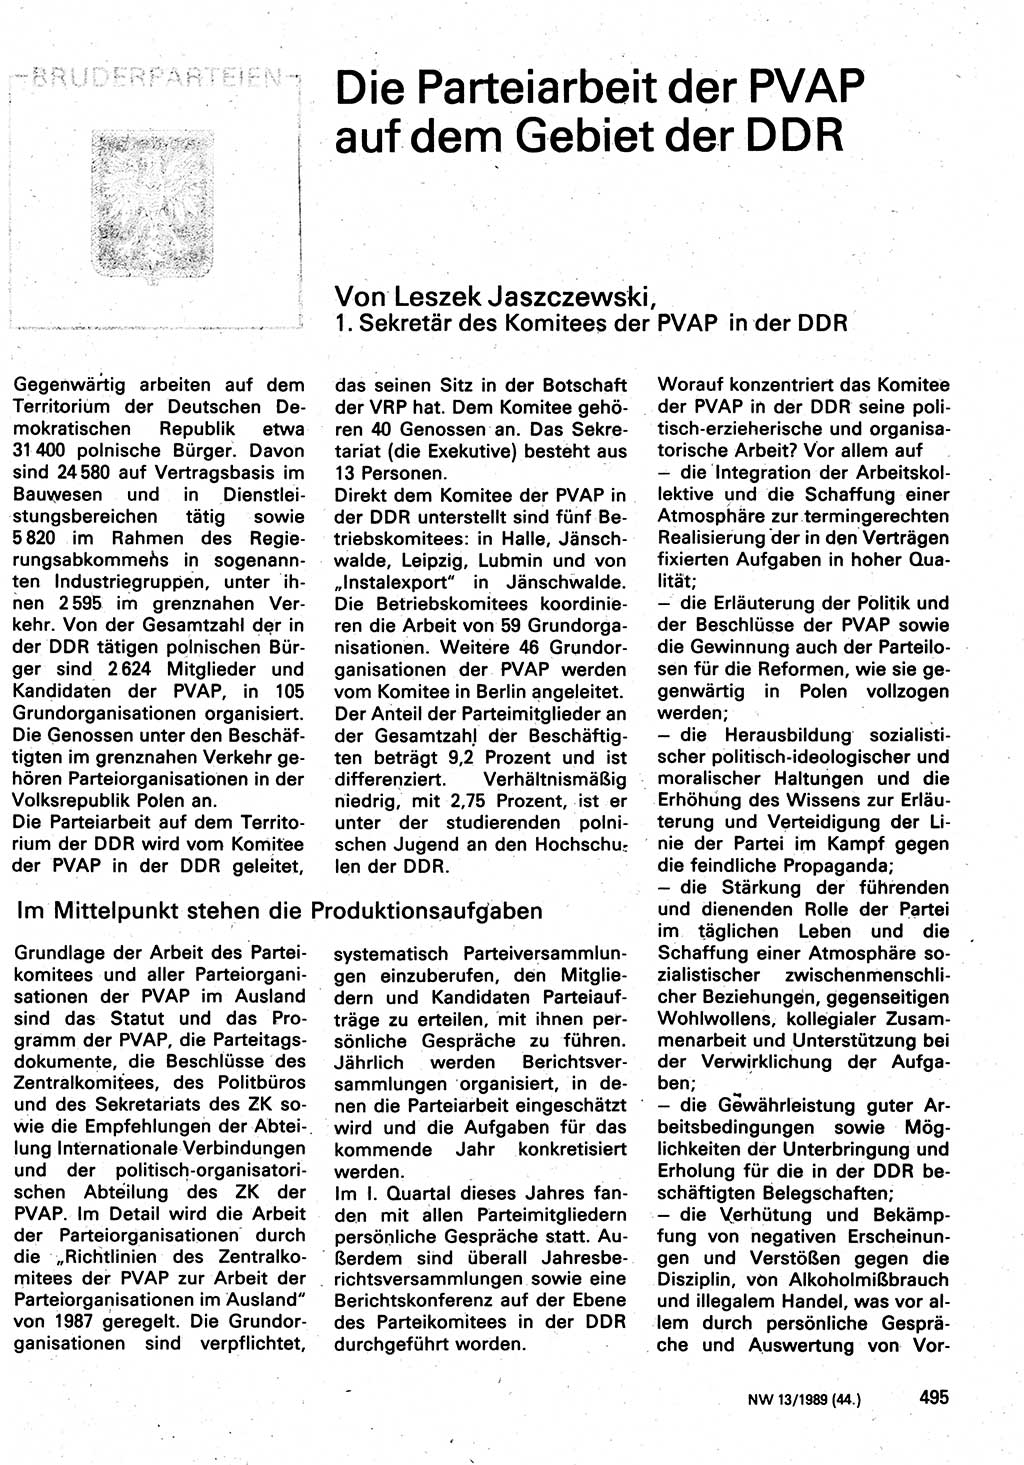 Neuer Weg (NW), Organ des Zentralkomitees (ZK) der SED (Sozialistische Einheitspartei Deutschlands) für Fragen des Parteilebens, 44. Jahrgang [Deutsche Demokratische Republik (DDR)] 1989, Seite 495 (NW ZK SED DDR 1989, S. 495)